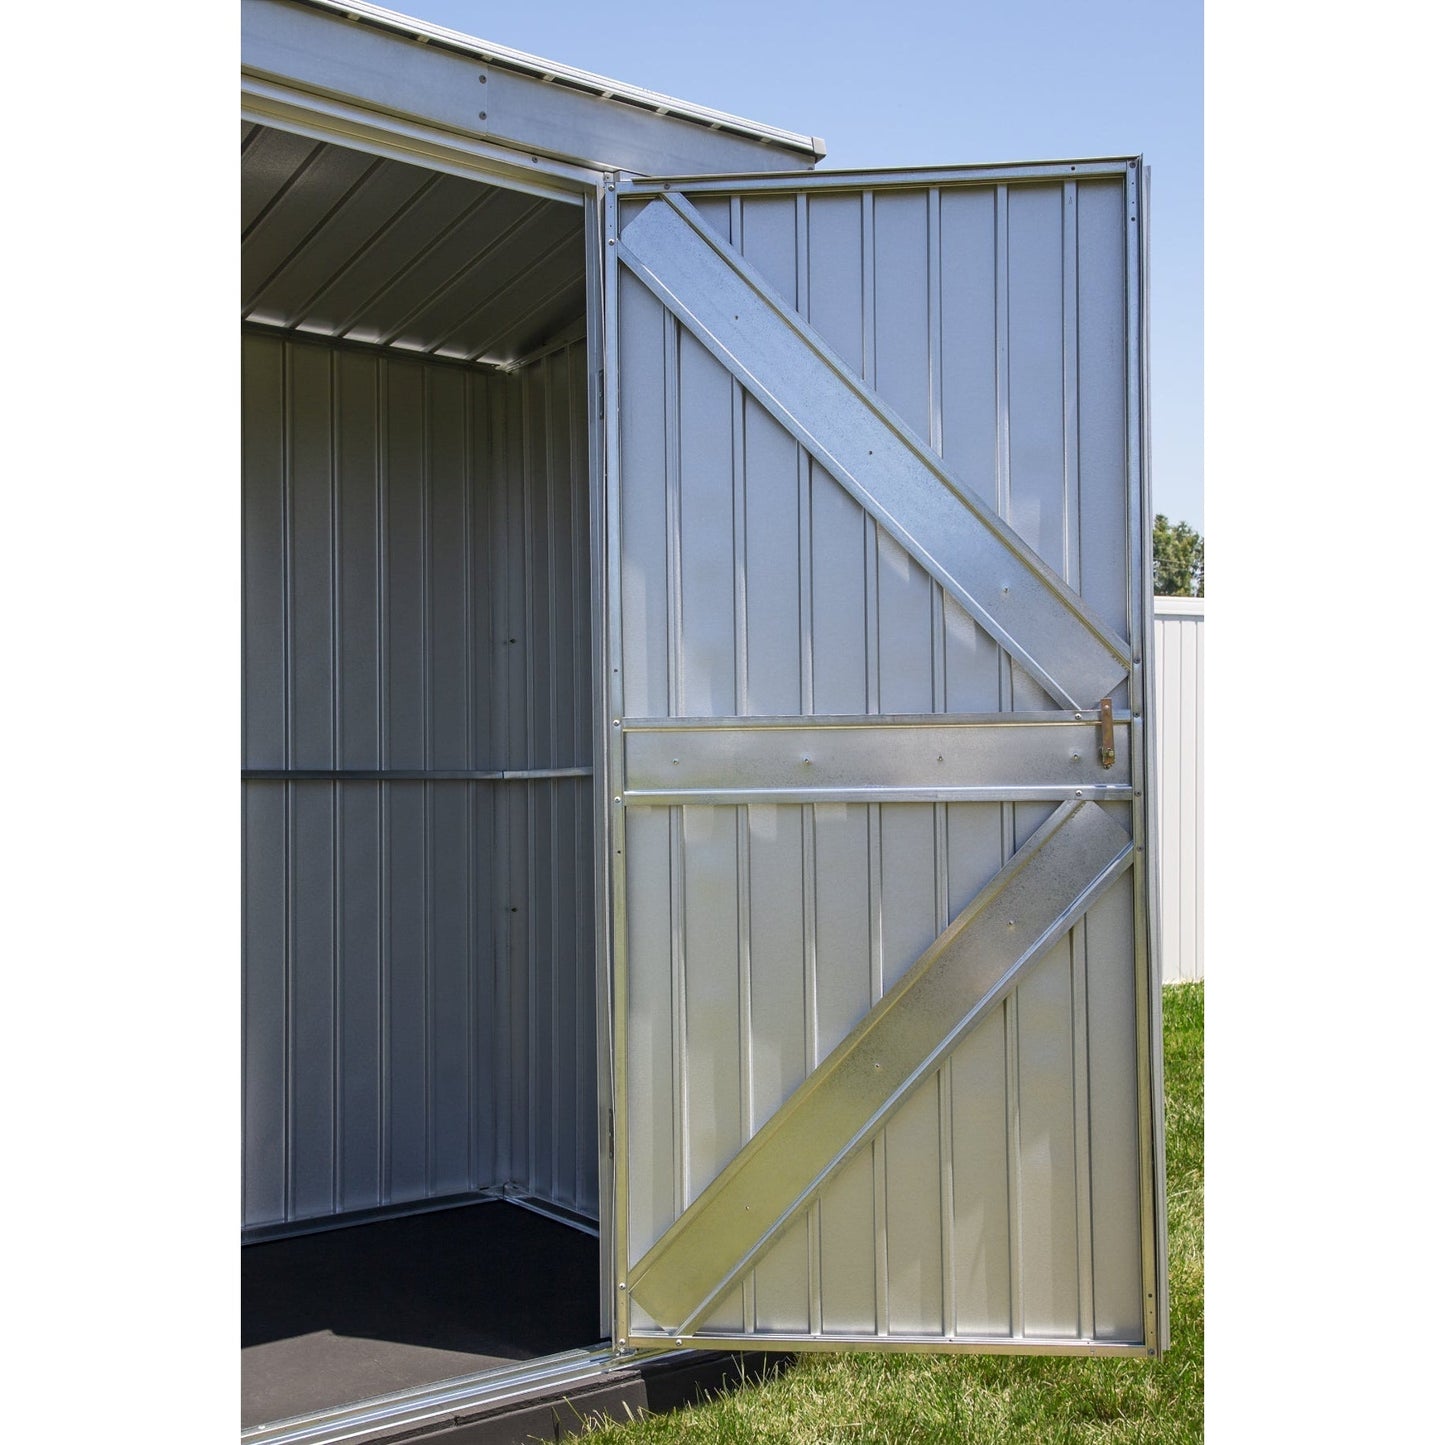 Arrow Elite Steel Storage Shed 14 x 12 ft.-Delightful Yard